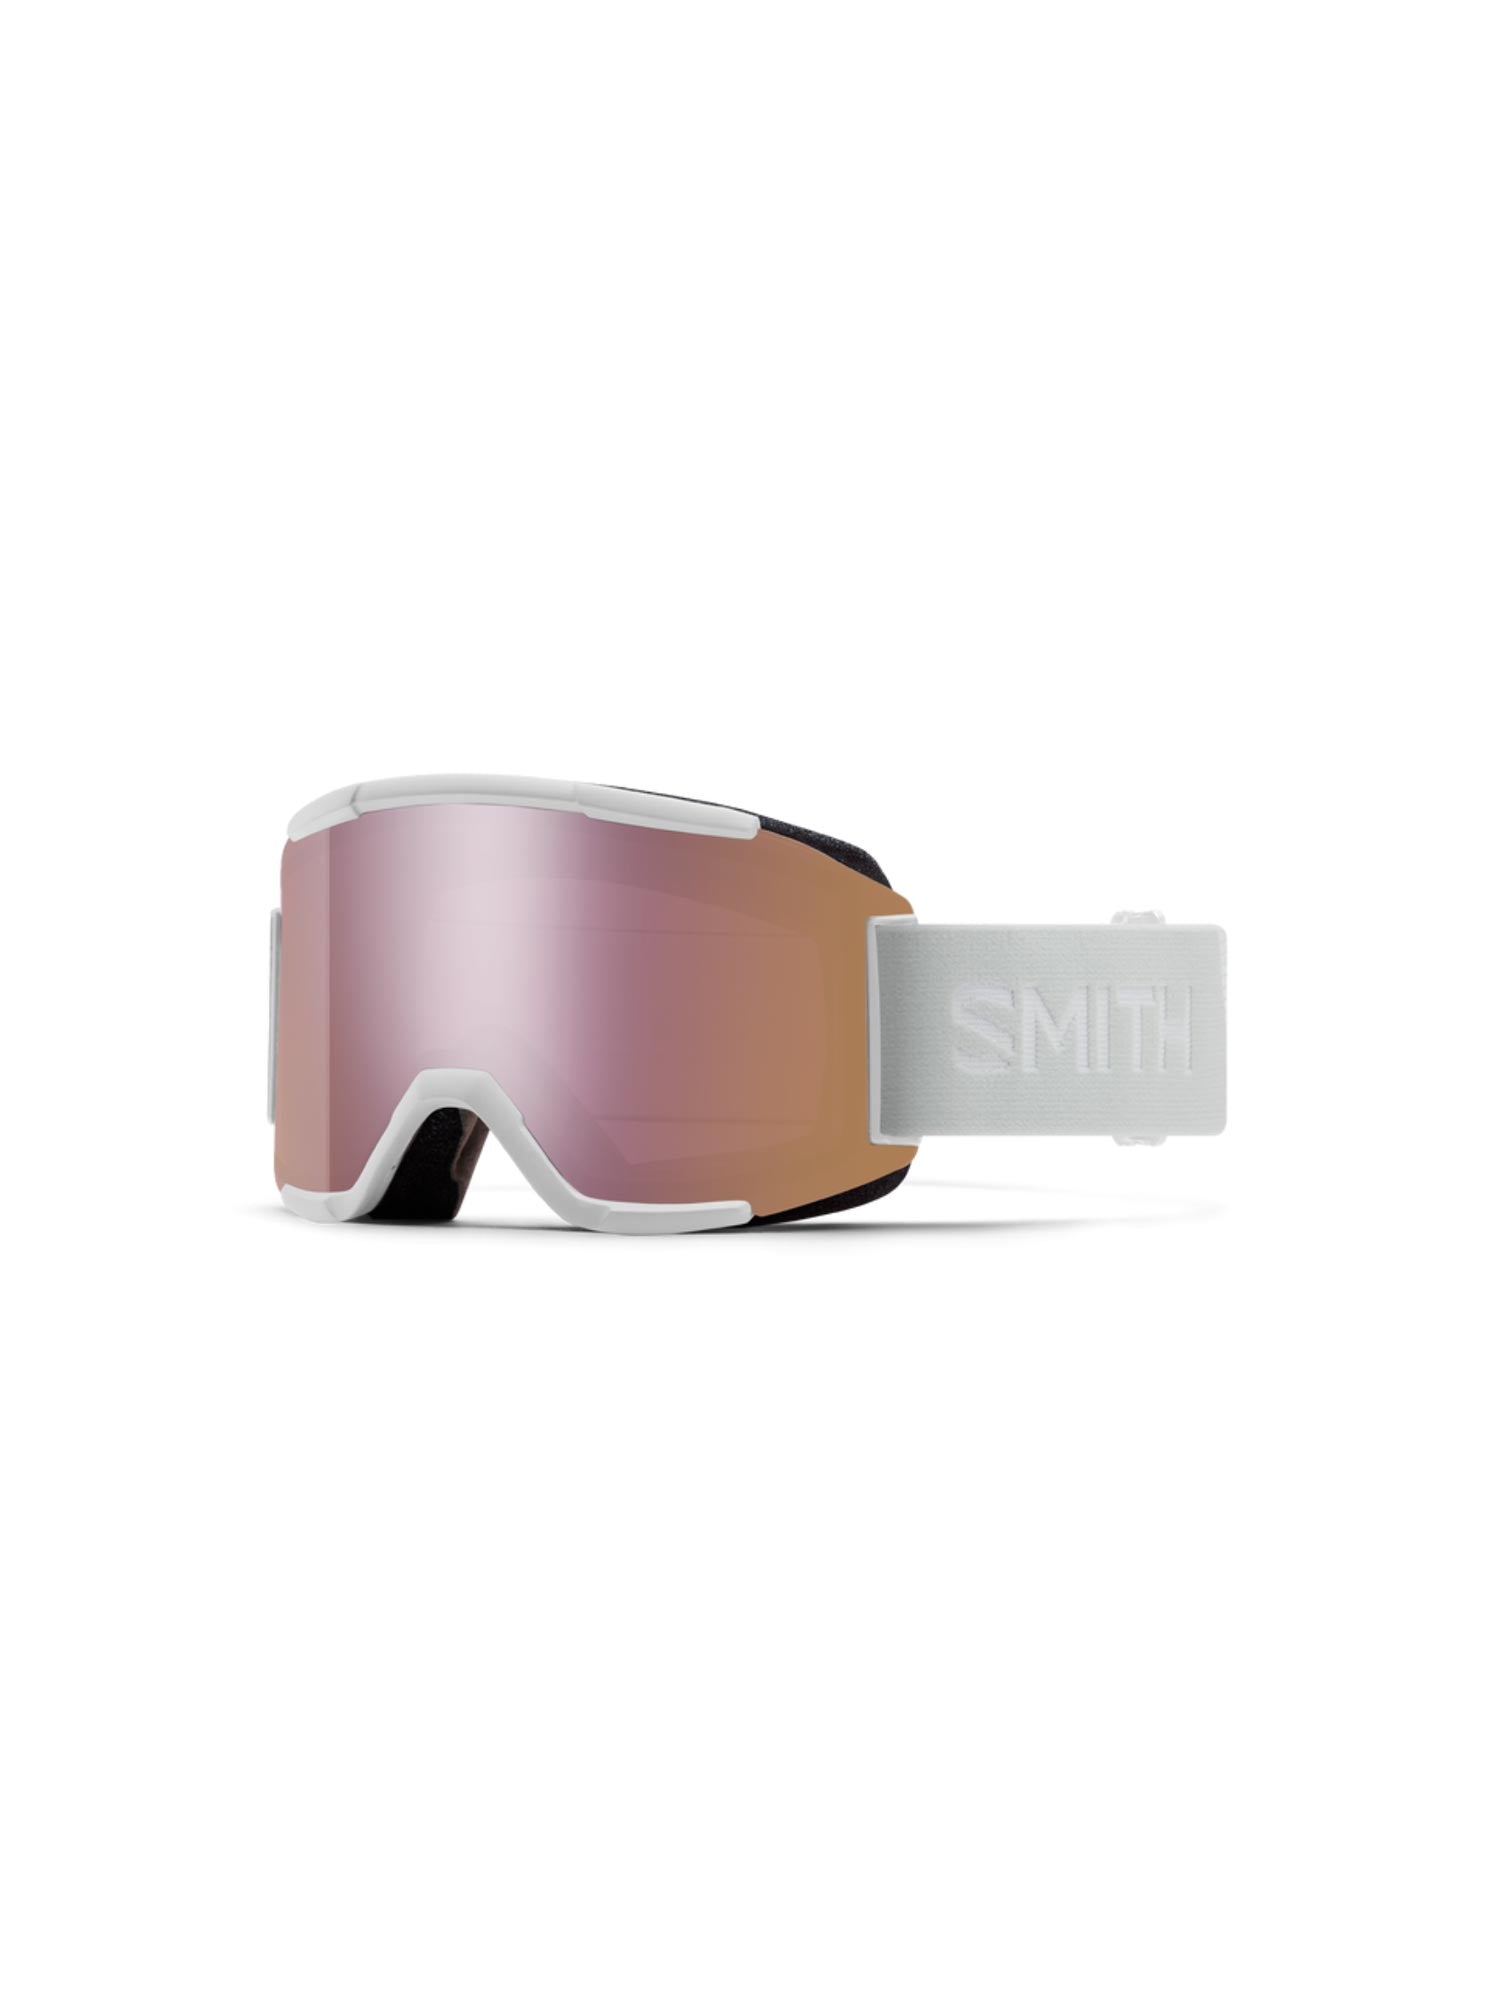 Smith Squad ski goggles, white strap rose gold lens